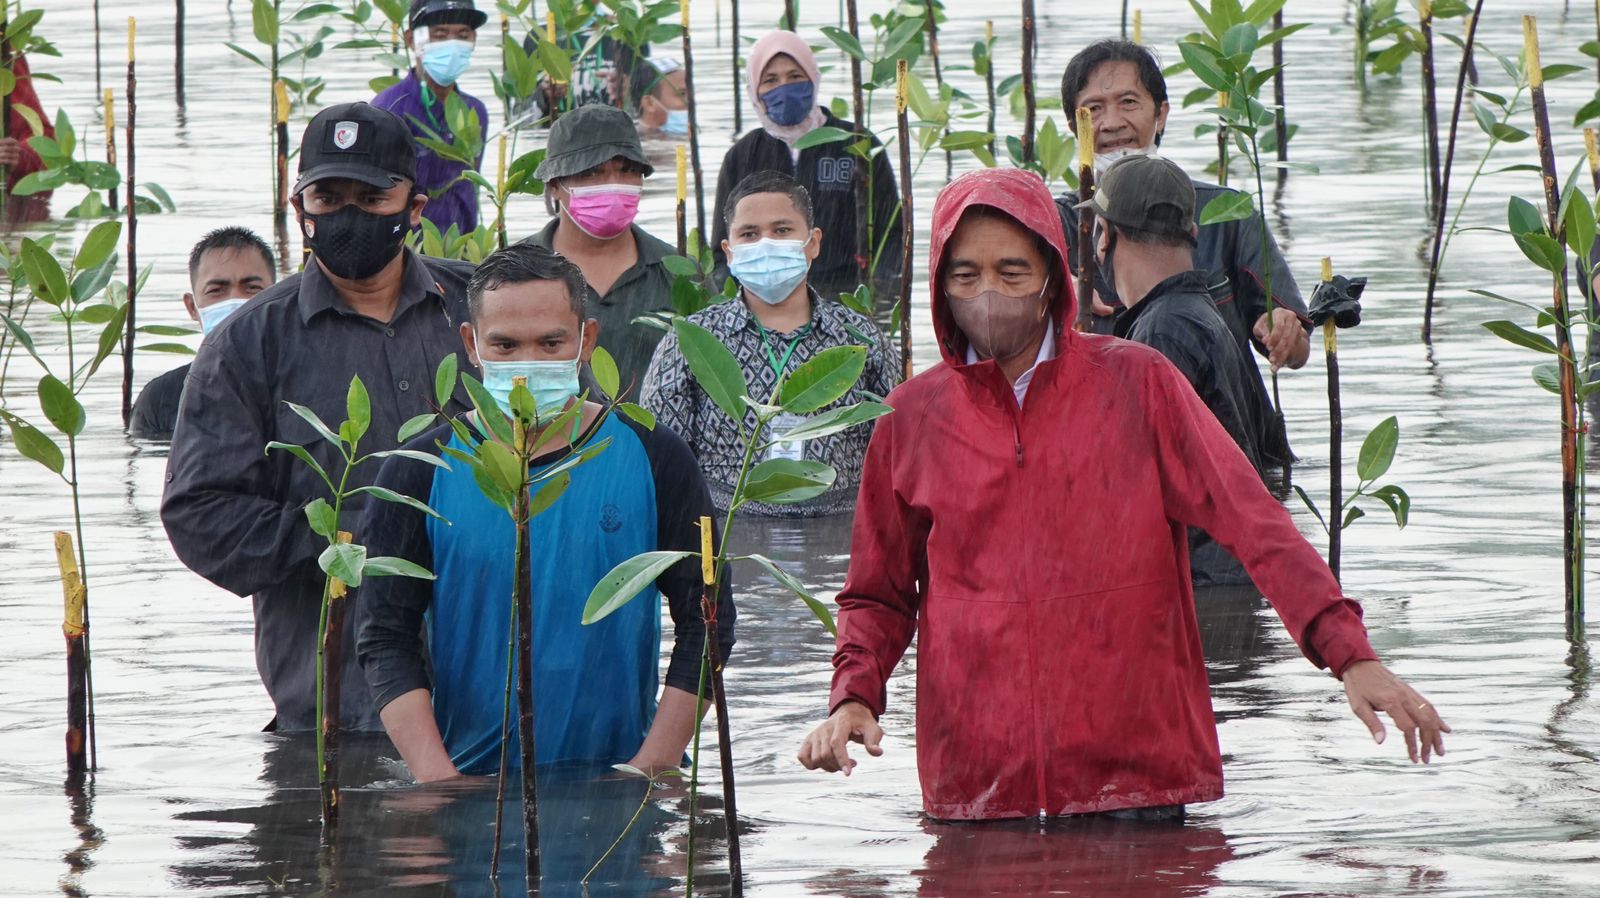 Turun ke Laut, Presiden Jokowi Tanam Mangrove Bersama Masyarakat di Batam